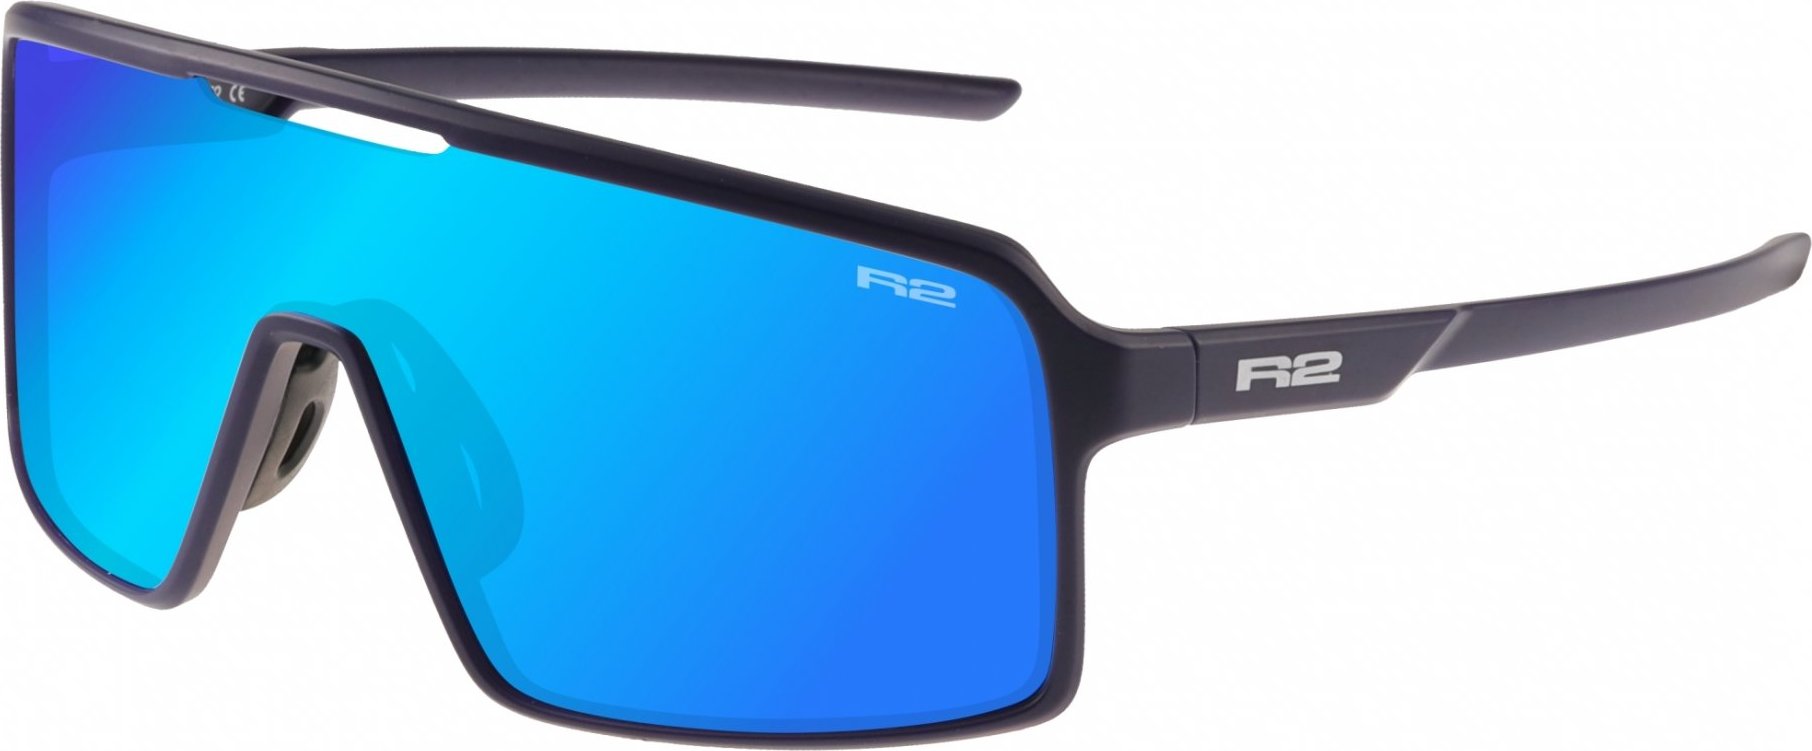 Sportovní brýle R2 Winner modrá